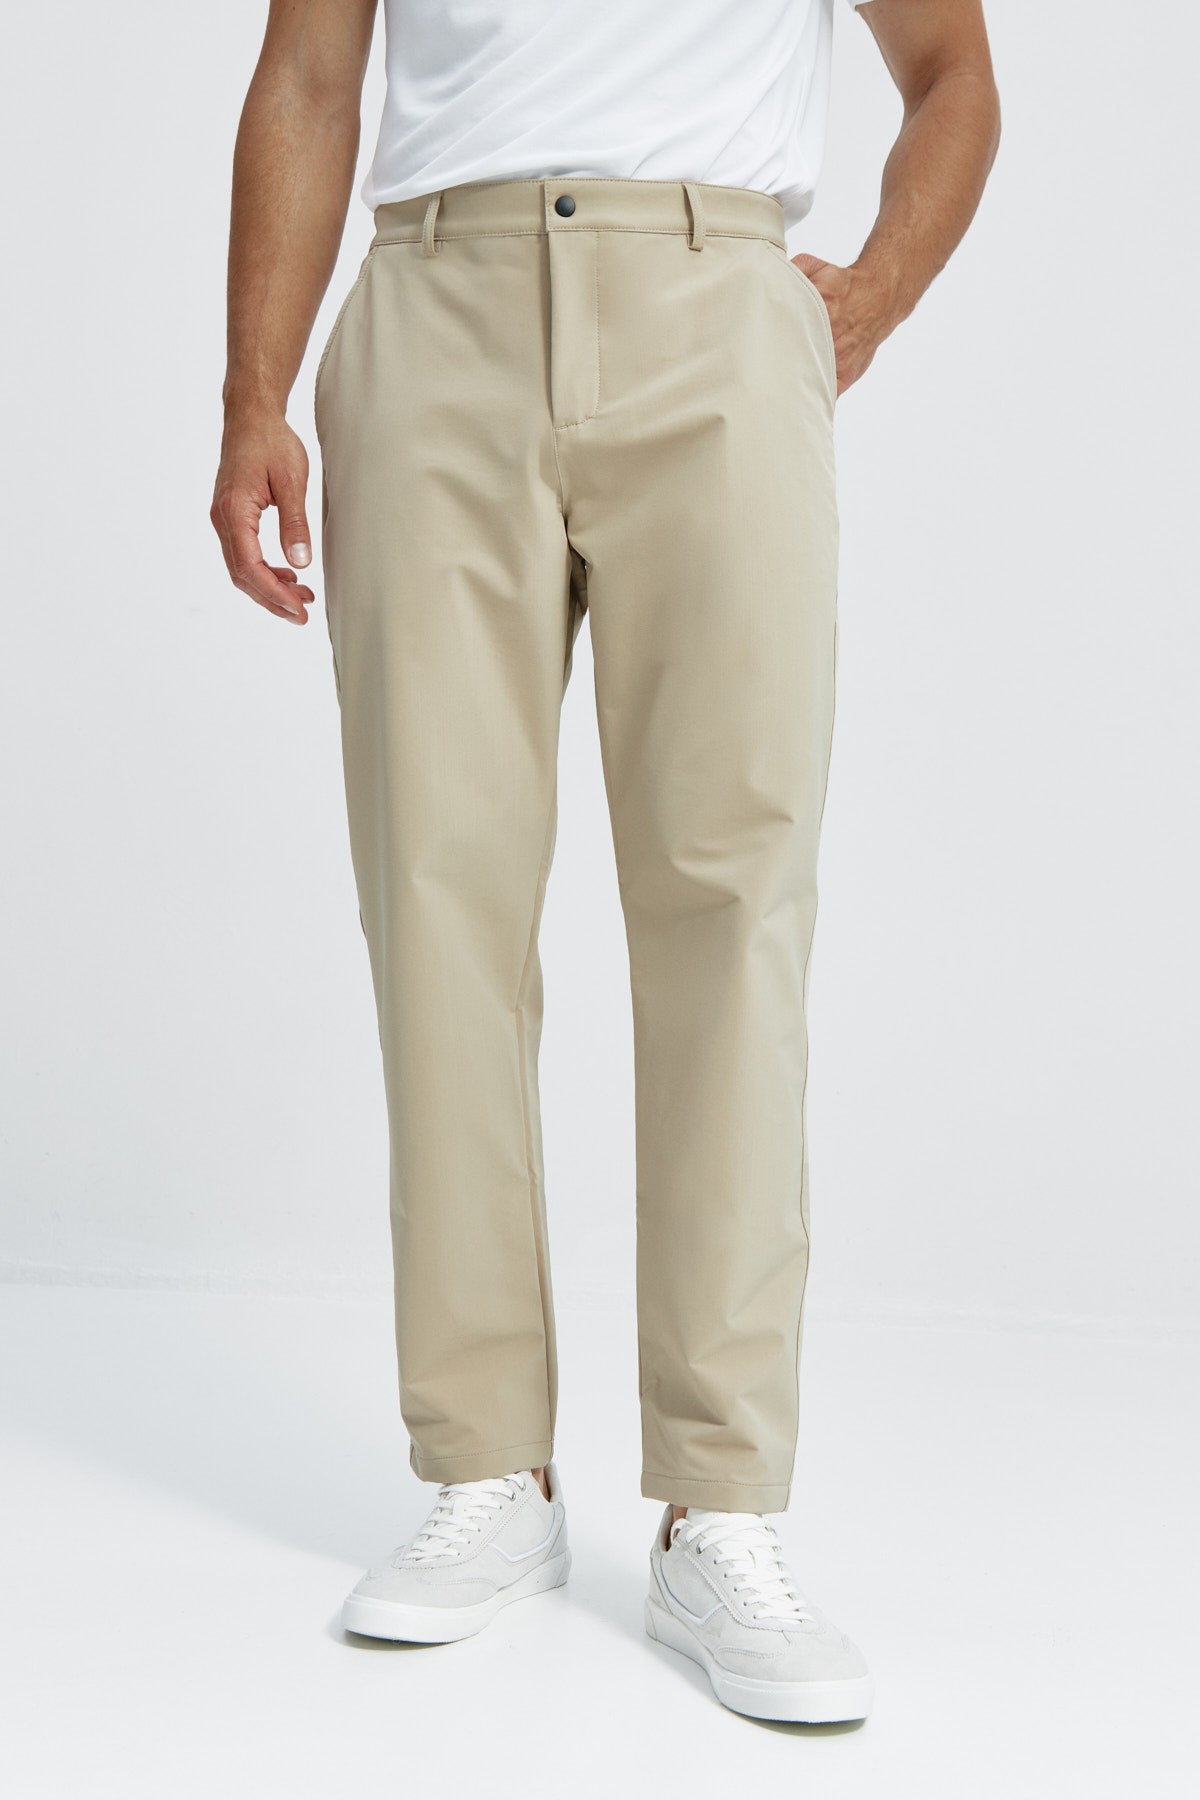 Pantalón chino regular beige para hombre con tecnología termorreguladora Coolmax. Foto frente